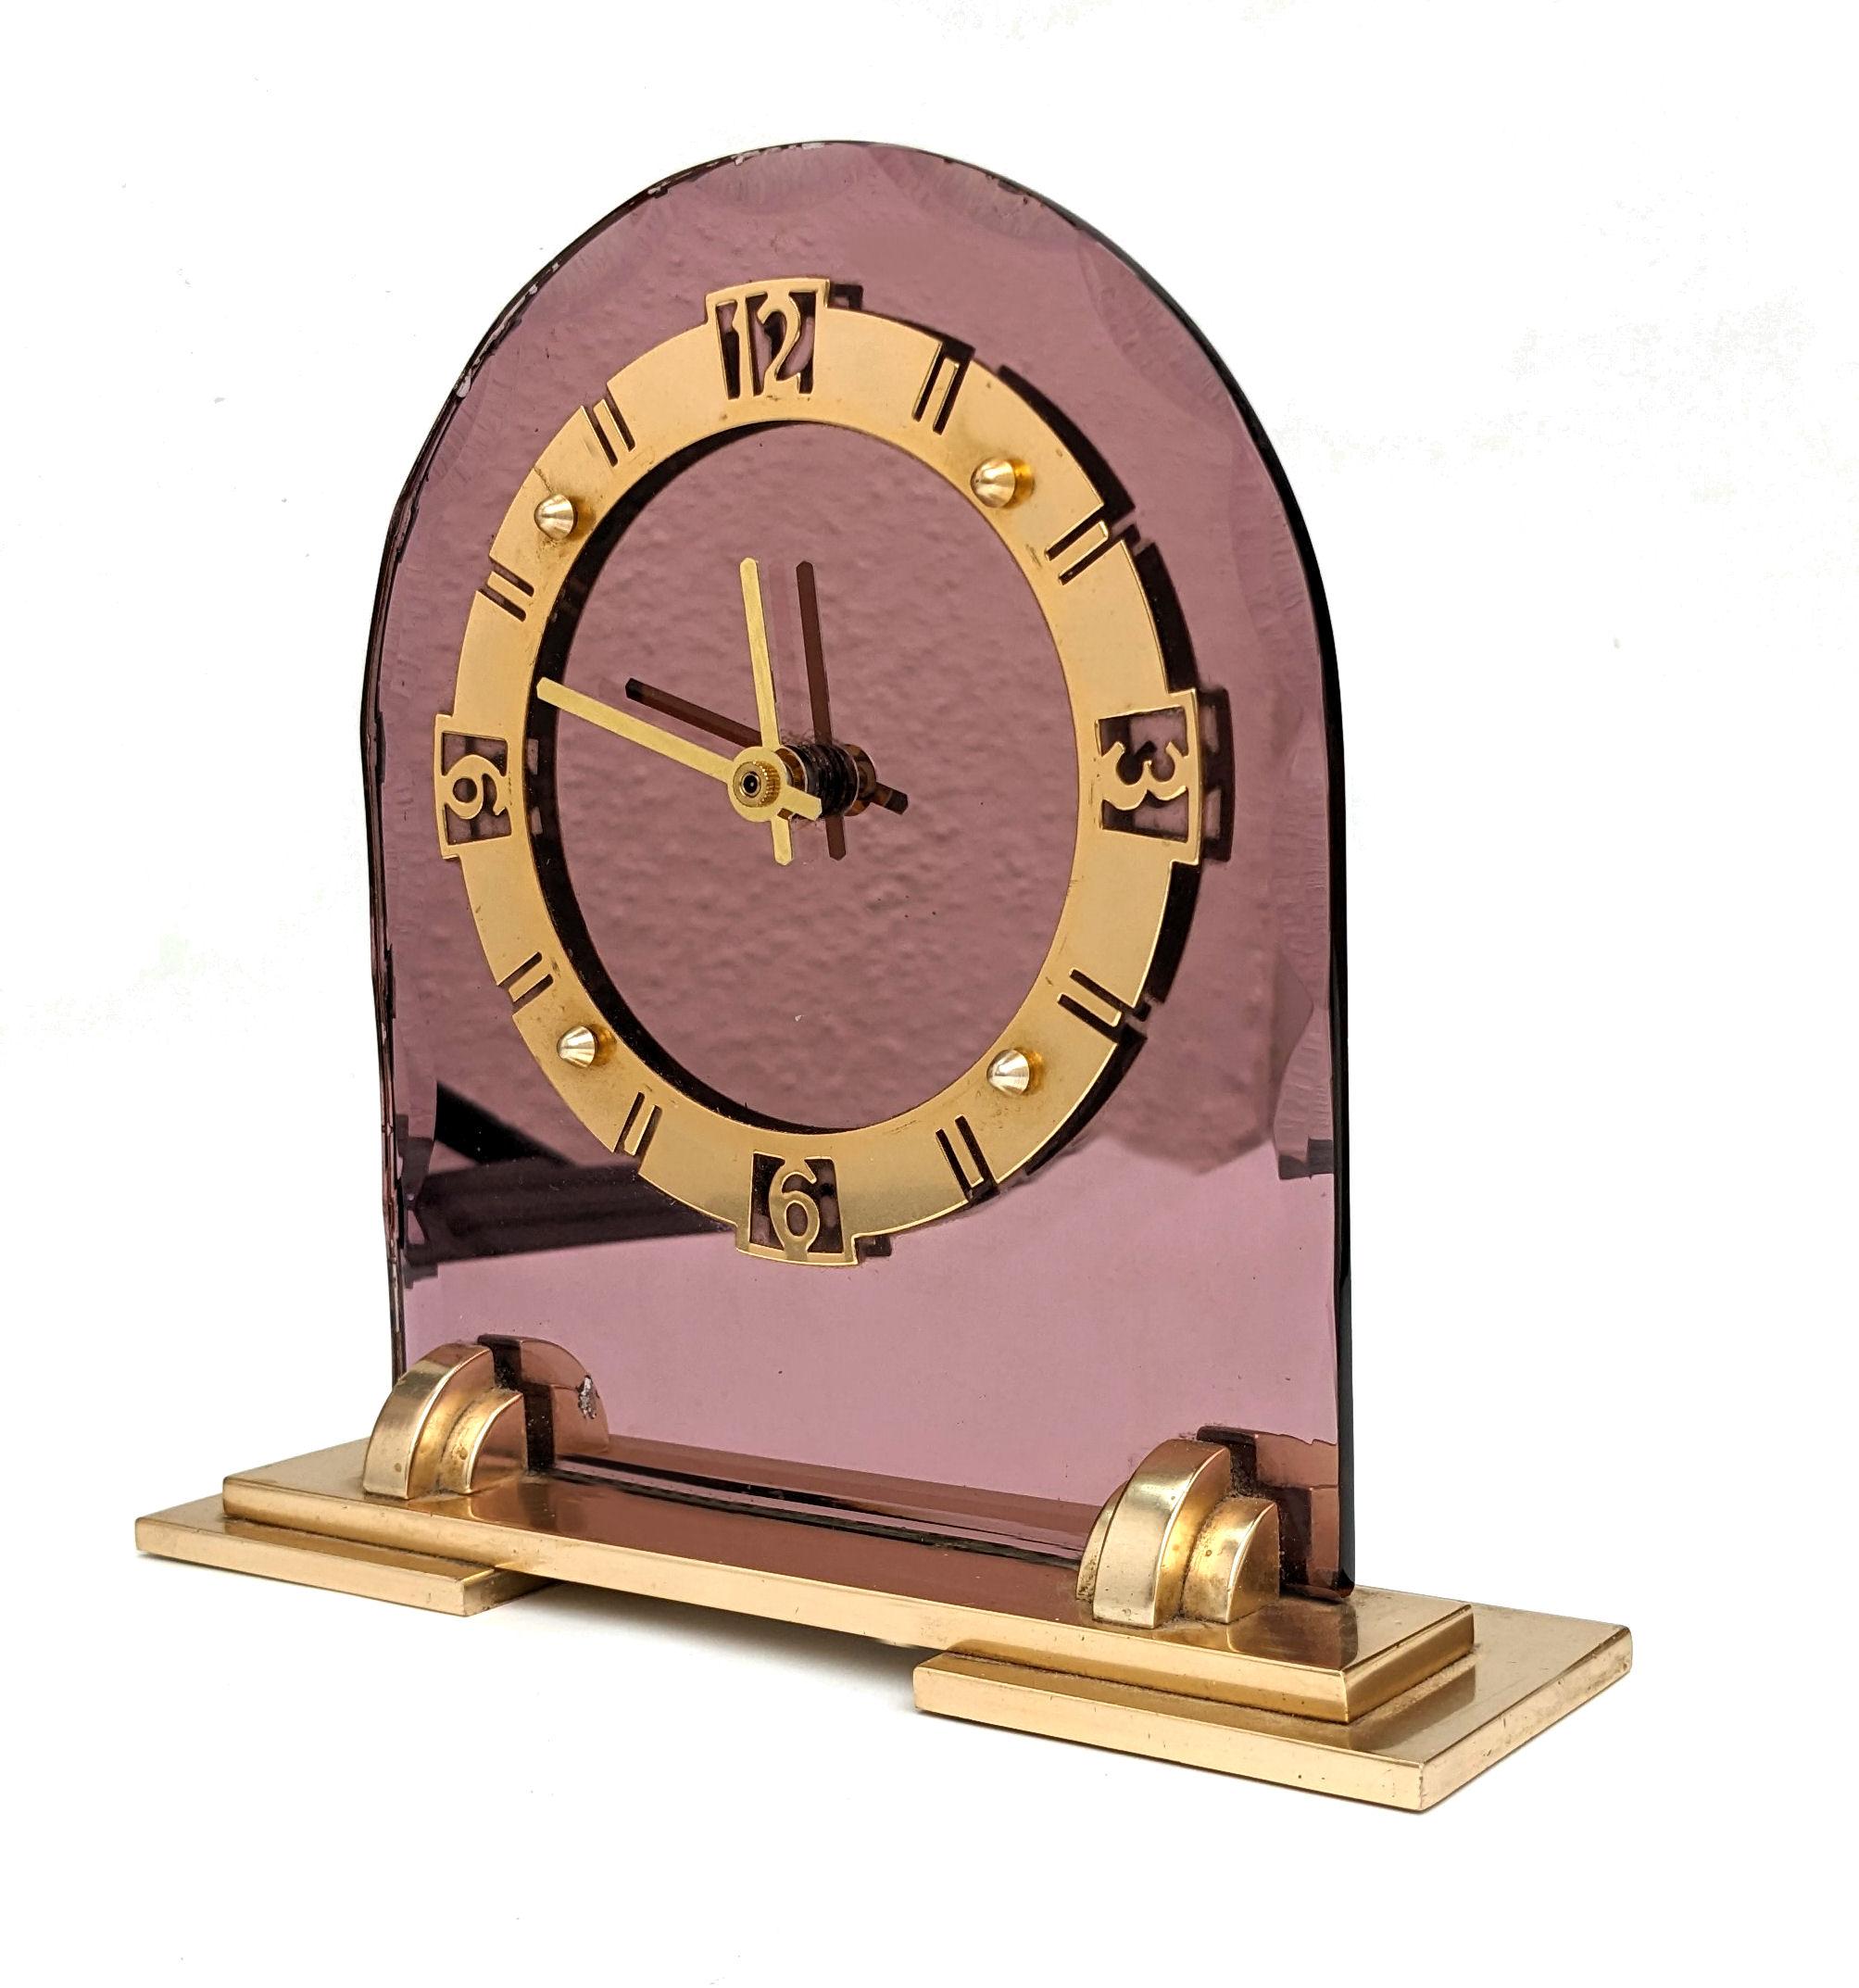 Für Ihre Betrachtung ist diese Rose Glasspiegel Art Deco Uhr. Schöner Zustand für sein Alter ist diese völlig authentisch 1930er Art Deco-Stil Spiegel Uhr, die aus England stammt. Hergestellt von Smith's English Clocks Ltd. in London, umgewandelt